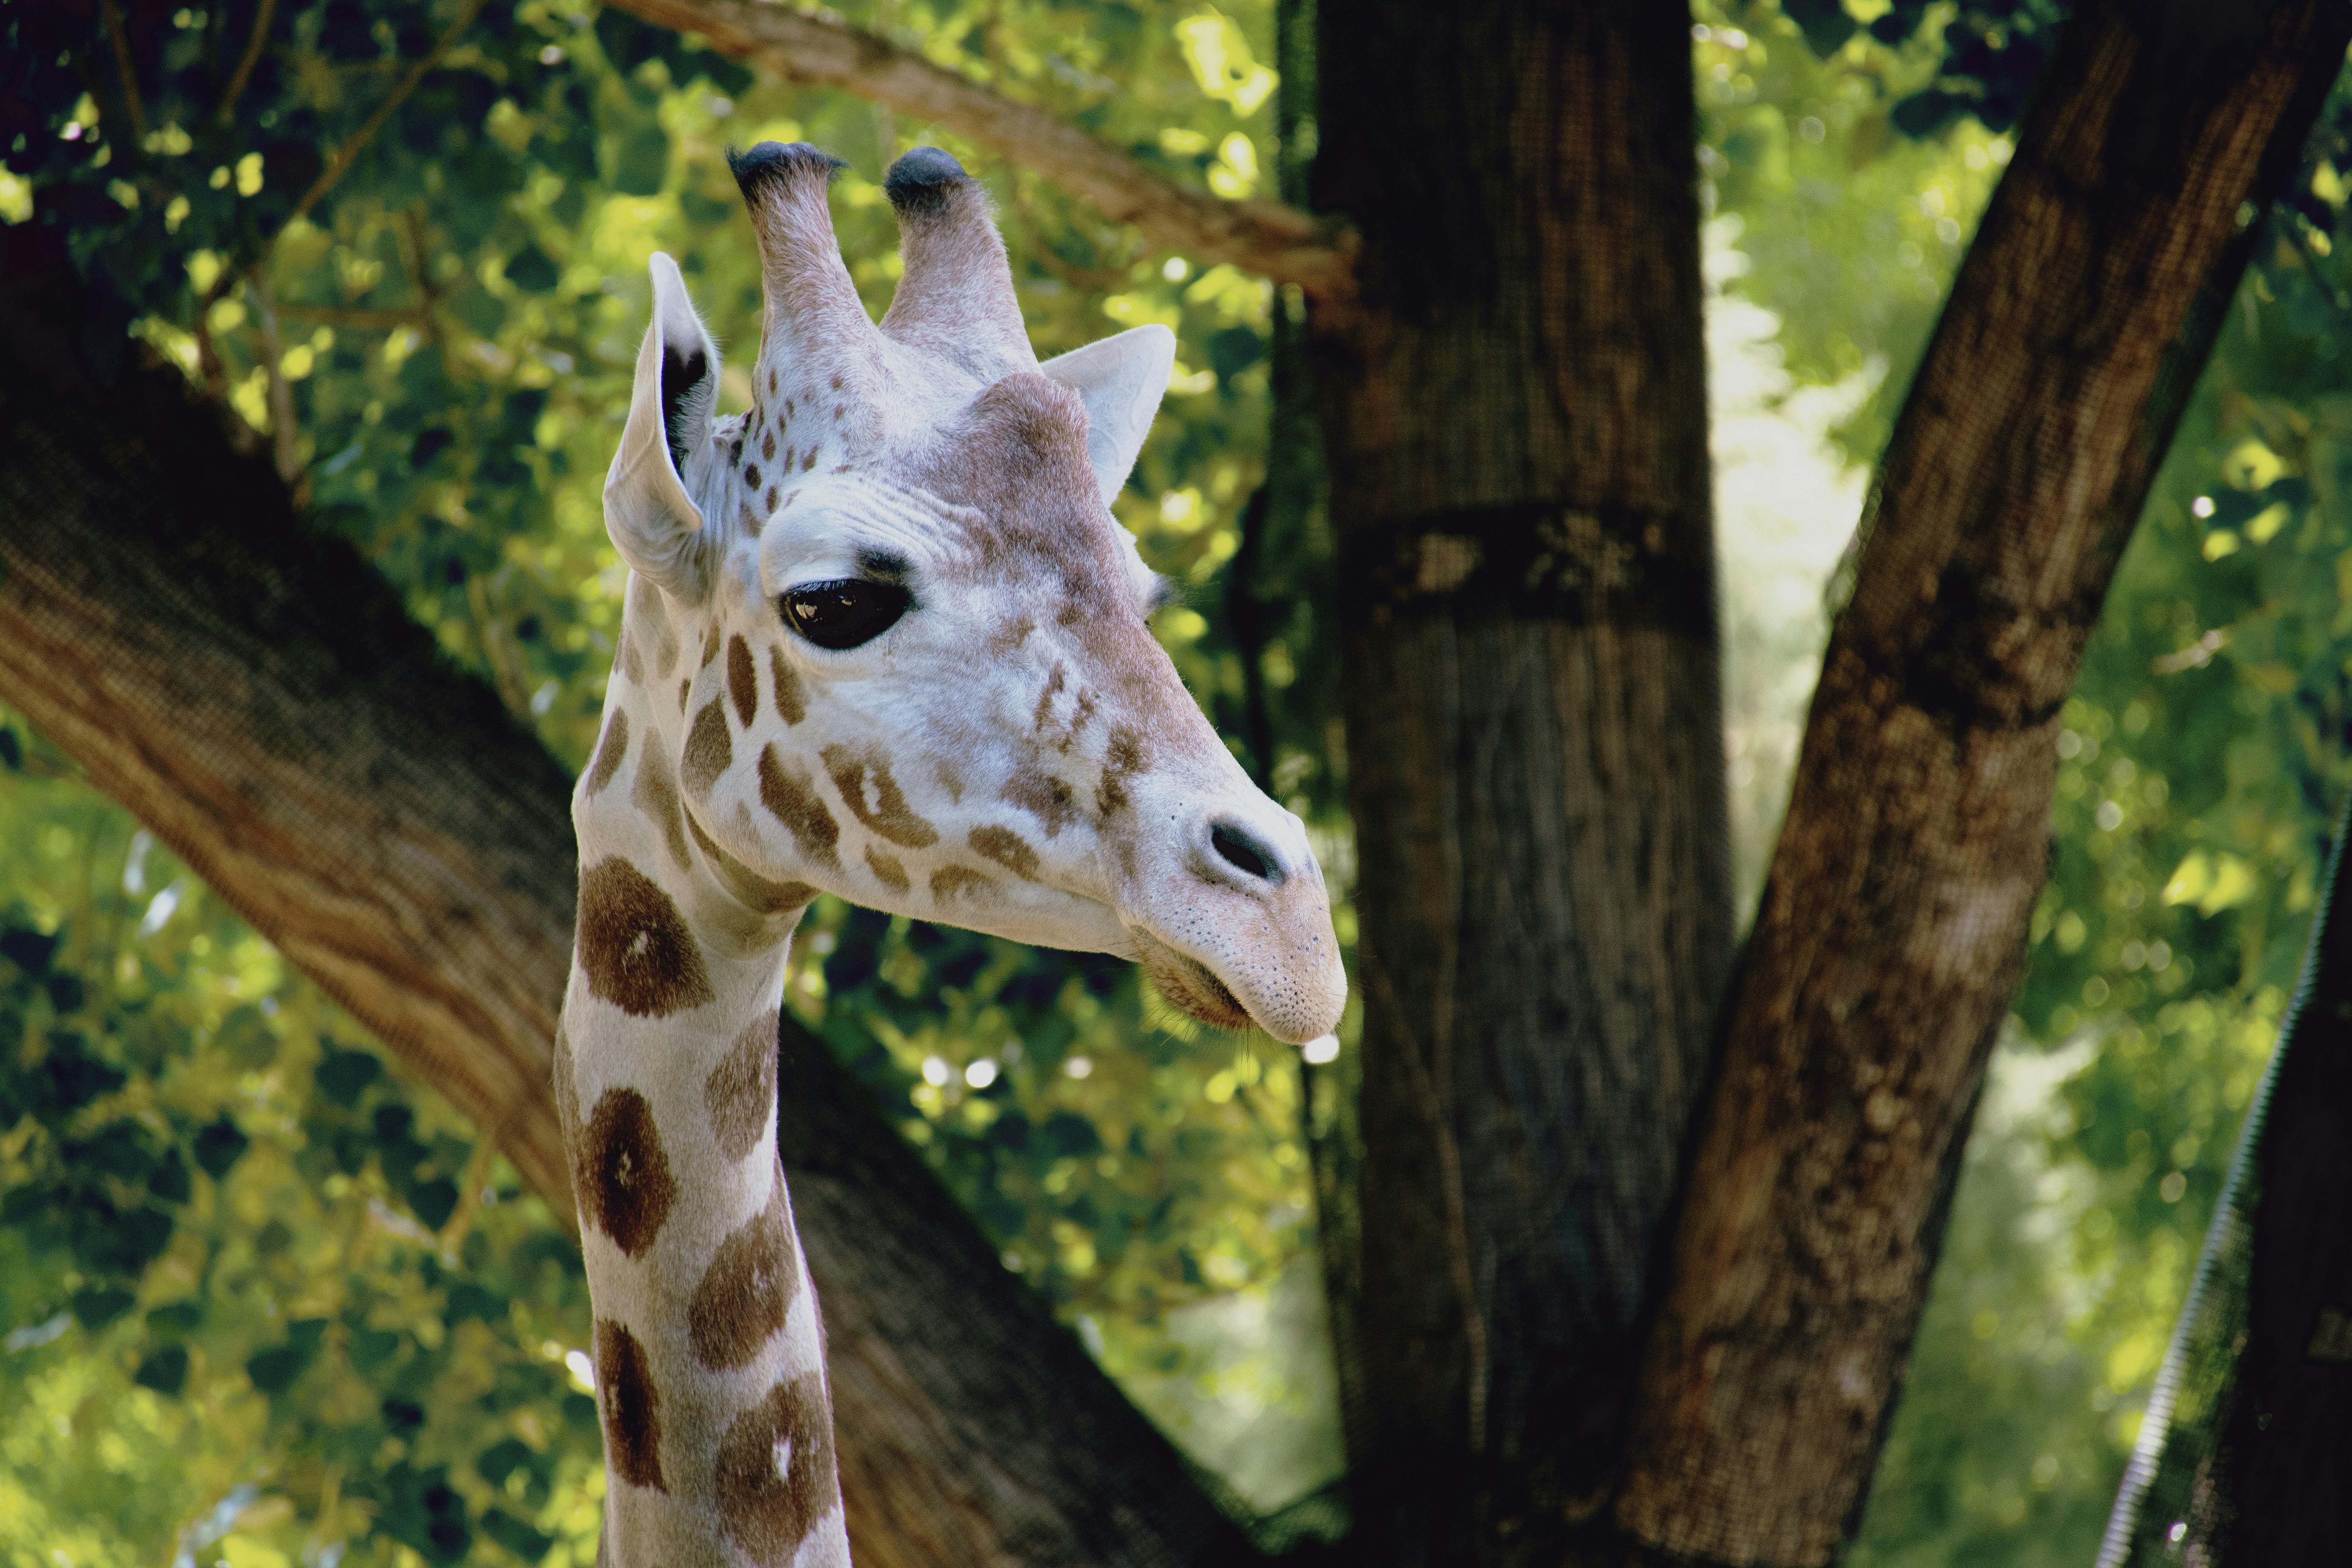 Close-Up Photography of Giraffe · Free Stock Photo - 5568 x 3712 jpeg 5102kB